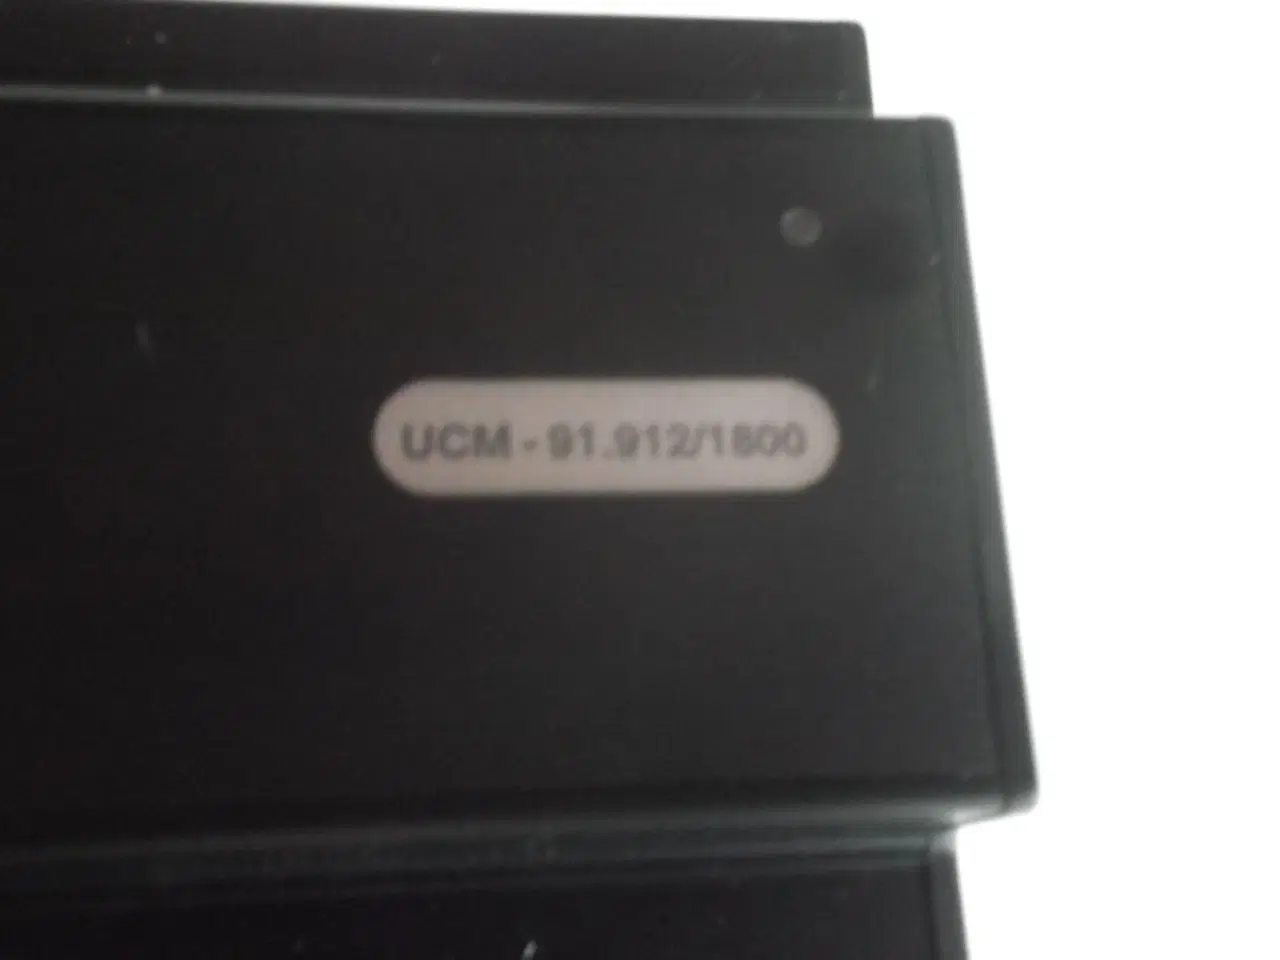 Billede 2 - Brodersen Controls GSM modem UCM-92.912/1800.